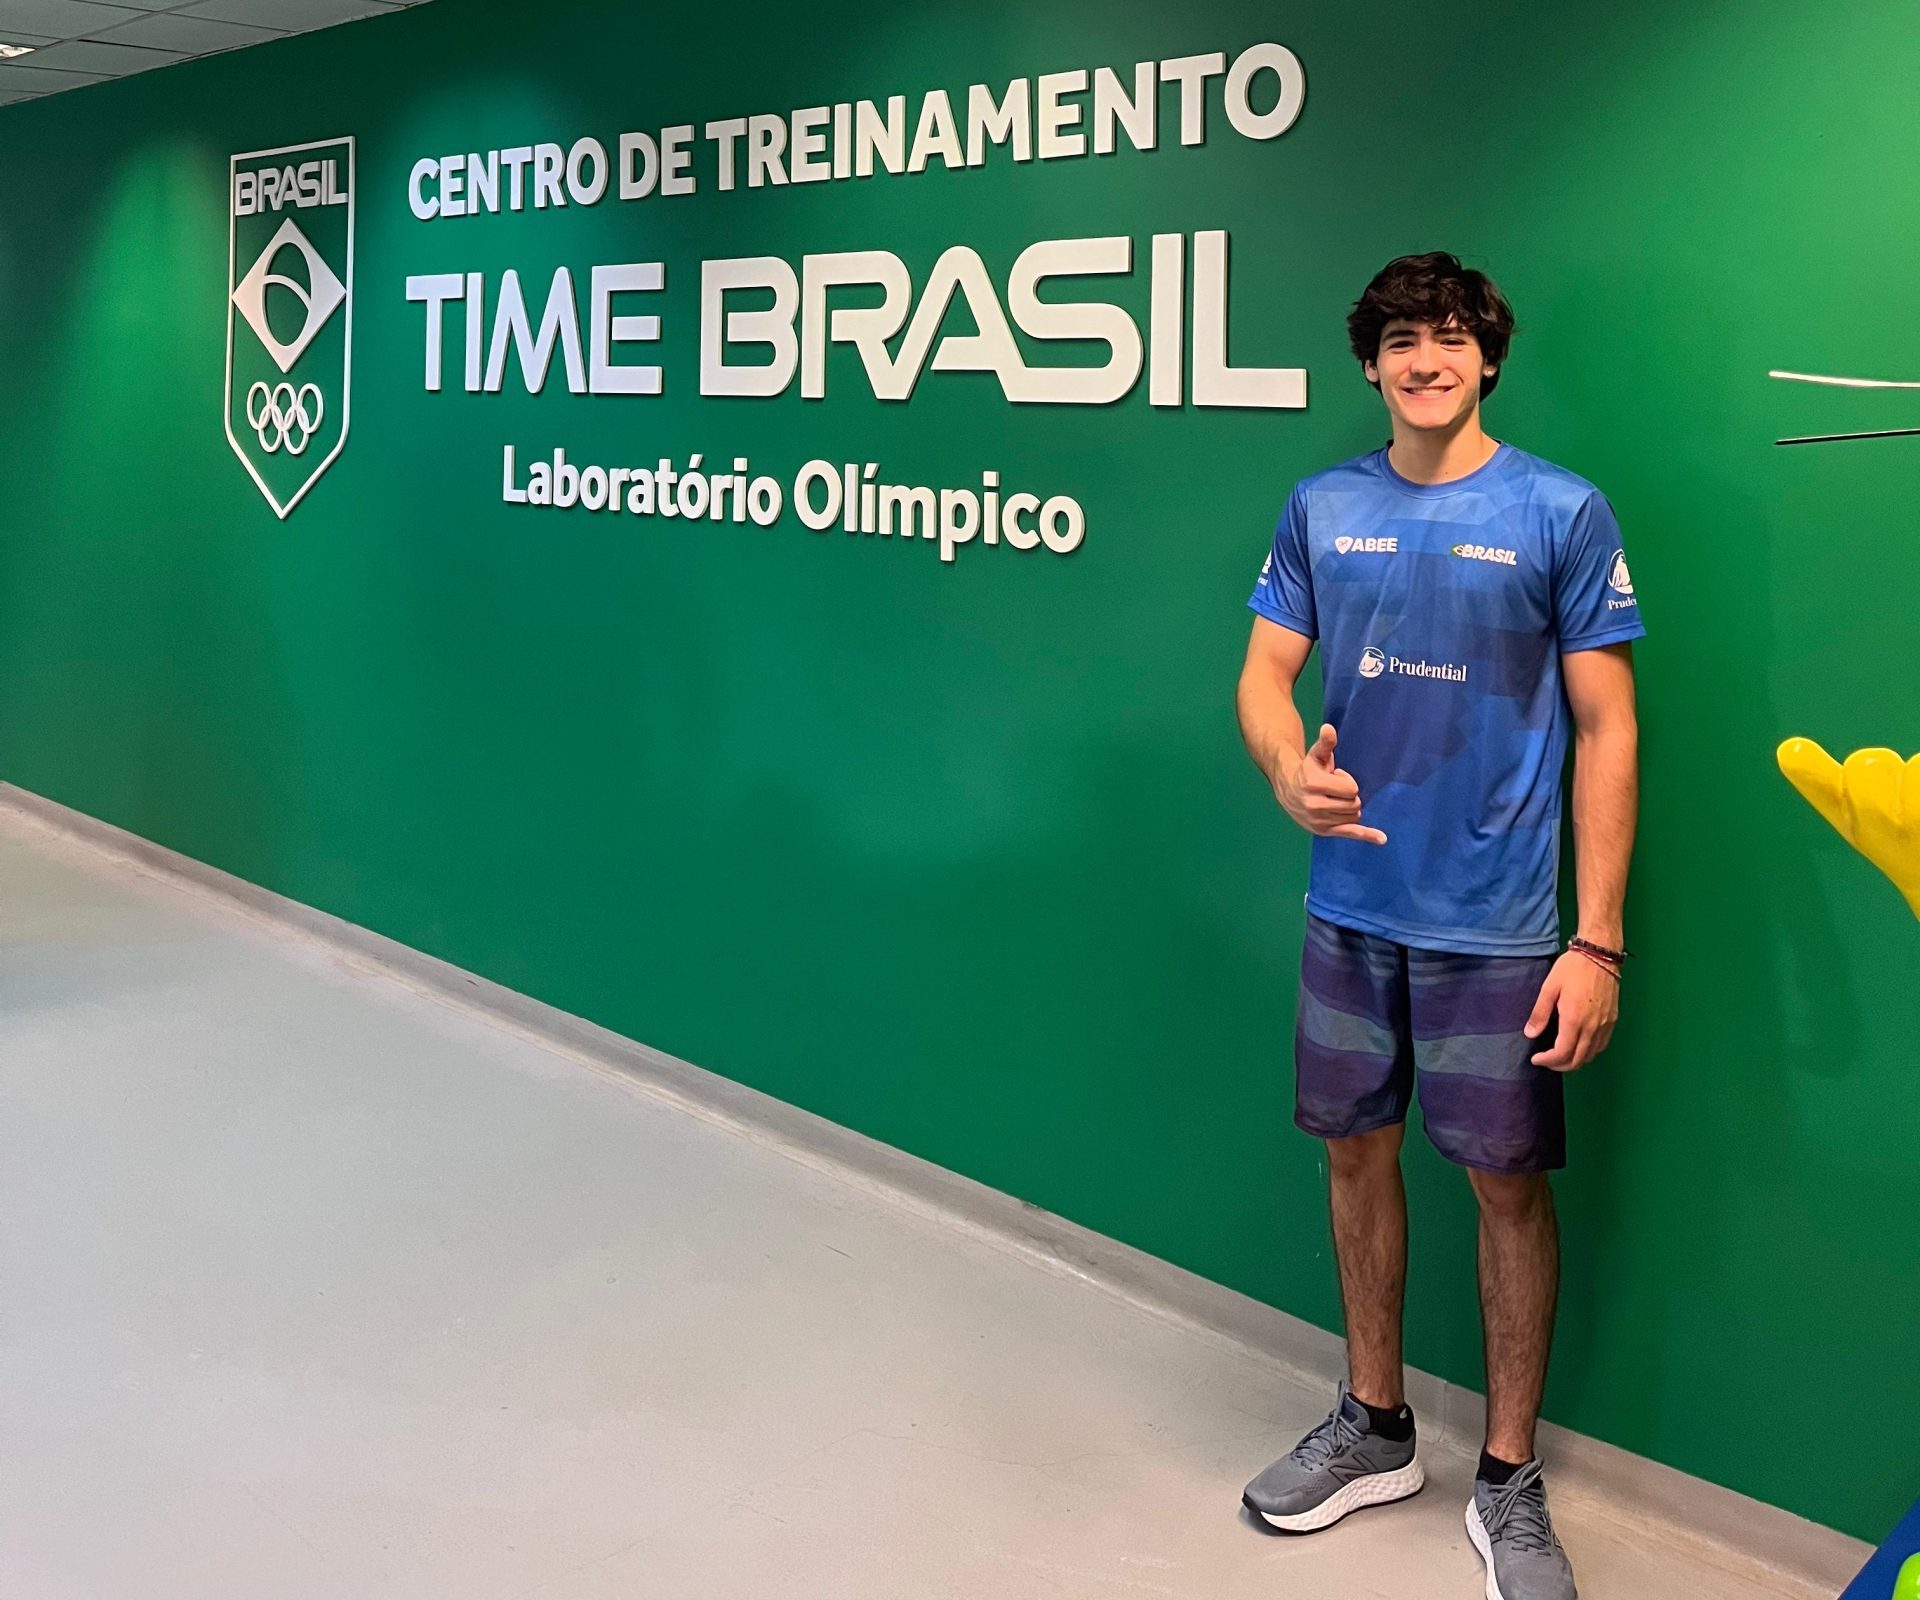 Destaque nacional na escalada esportiva, Felipe Ferreira exalta modalidade e mira Olimpíadas